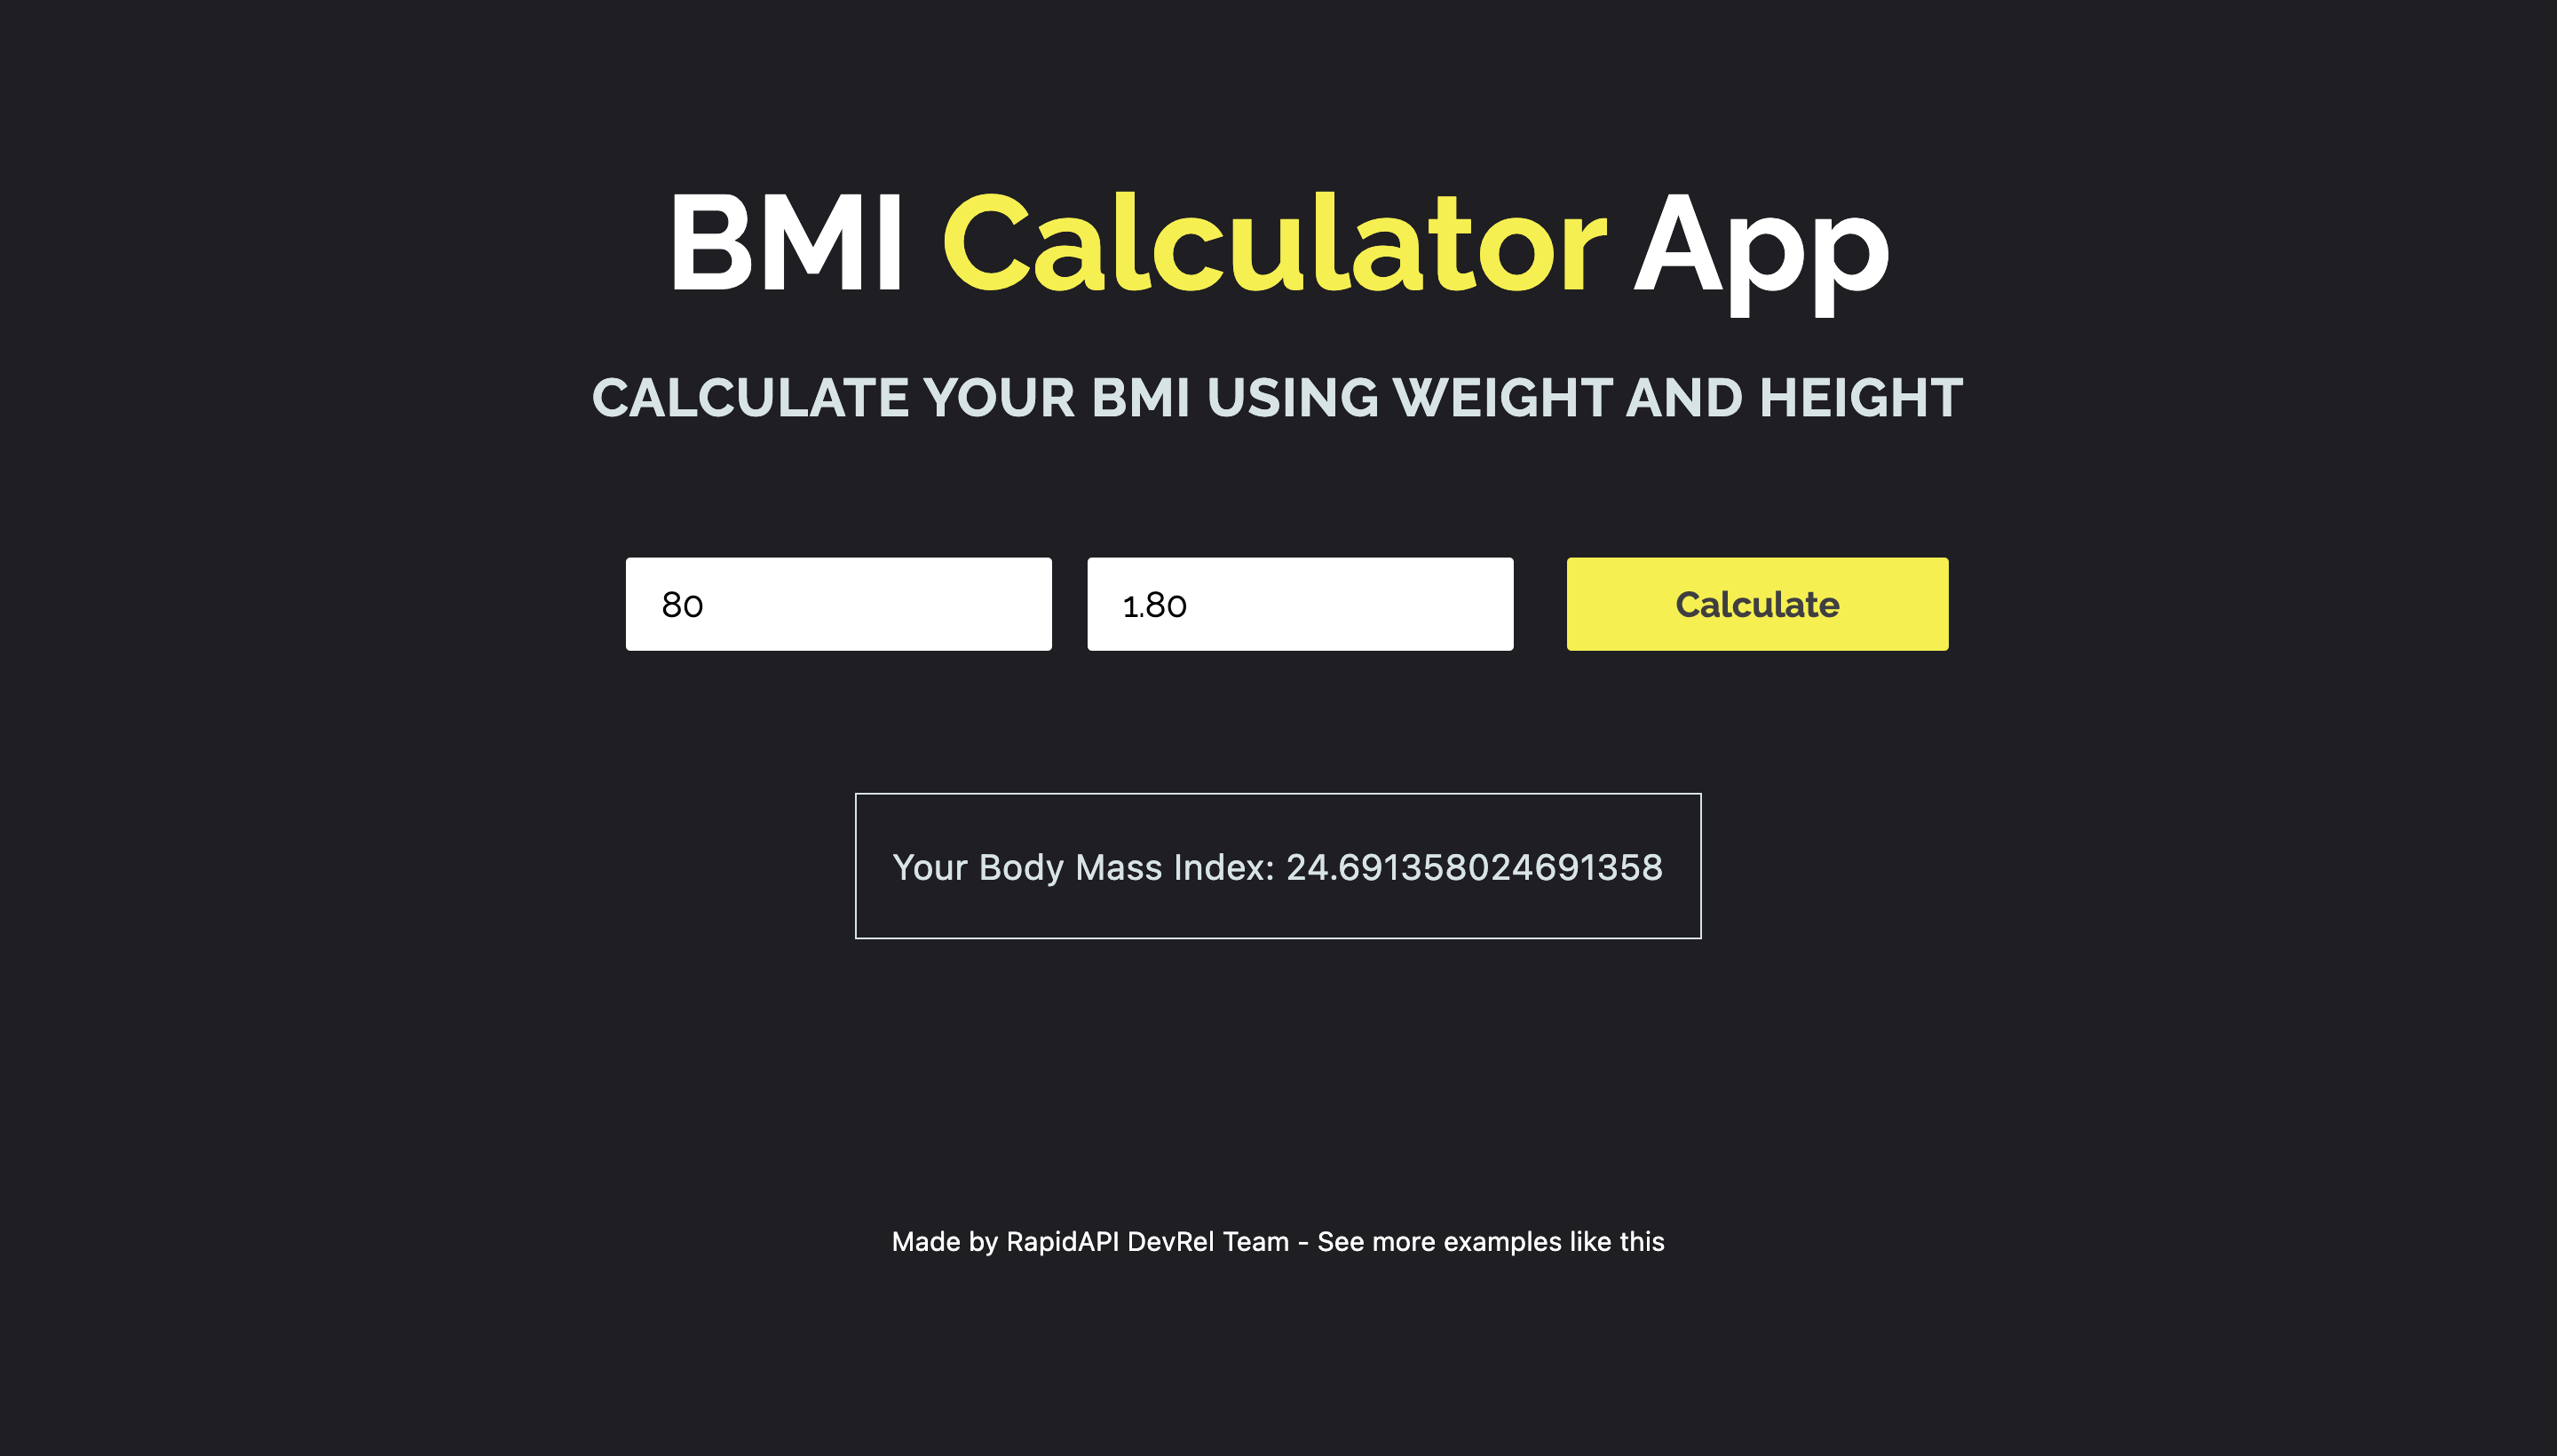 BMI Calculator App built with Next.js and Body Mass Index (BMI) Calculator API